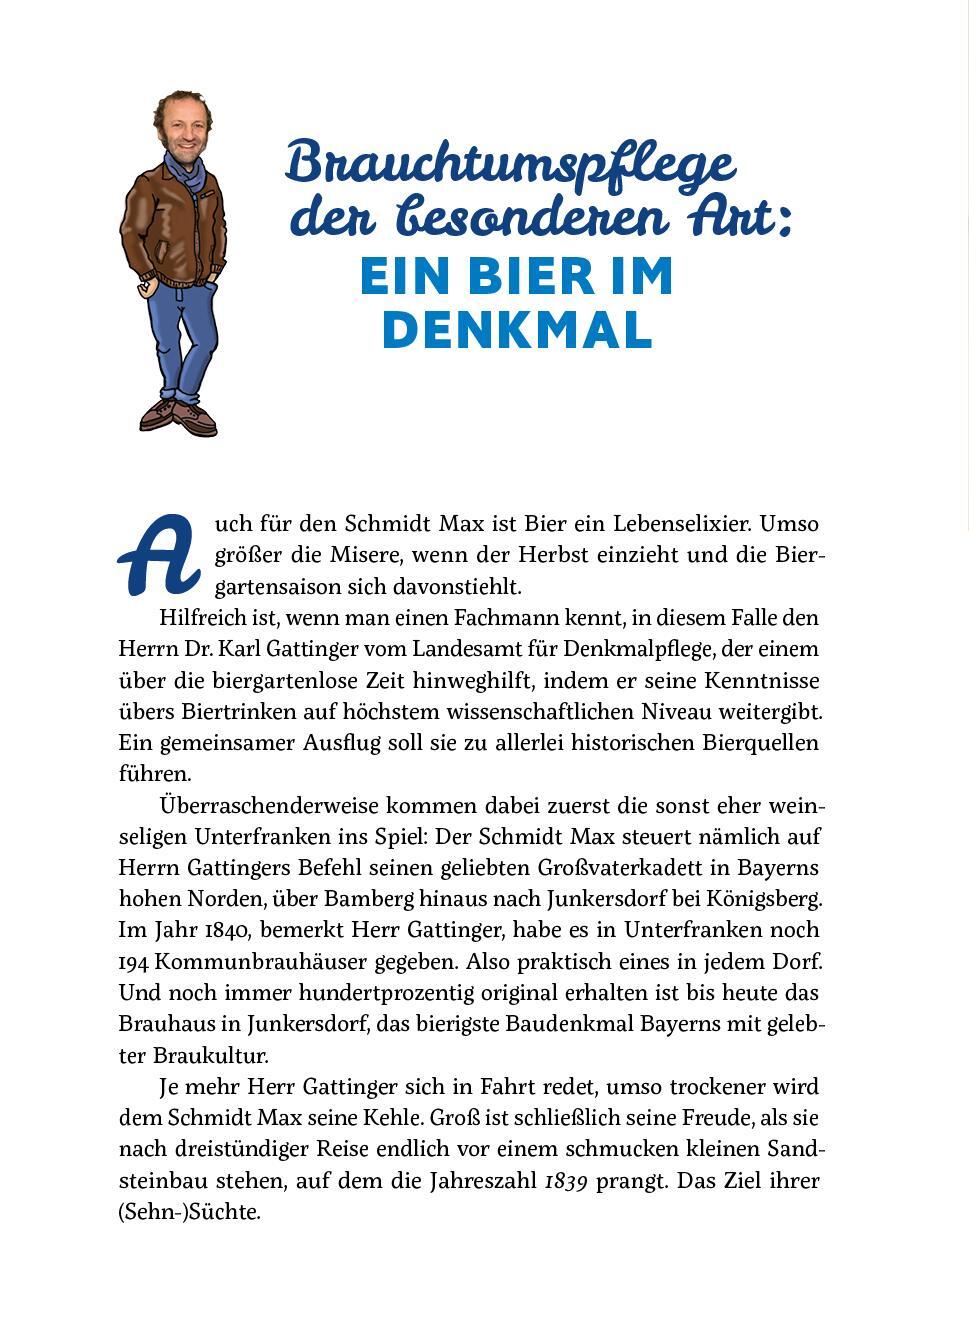 Bild: 9783747202036 | Der Schmidt Max macht ein Buch | Sachbuch | Max Schmidt | Taschenbuch